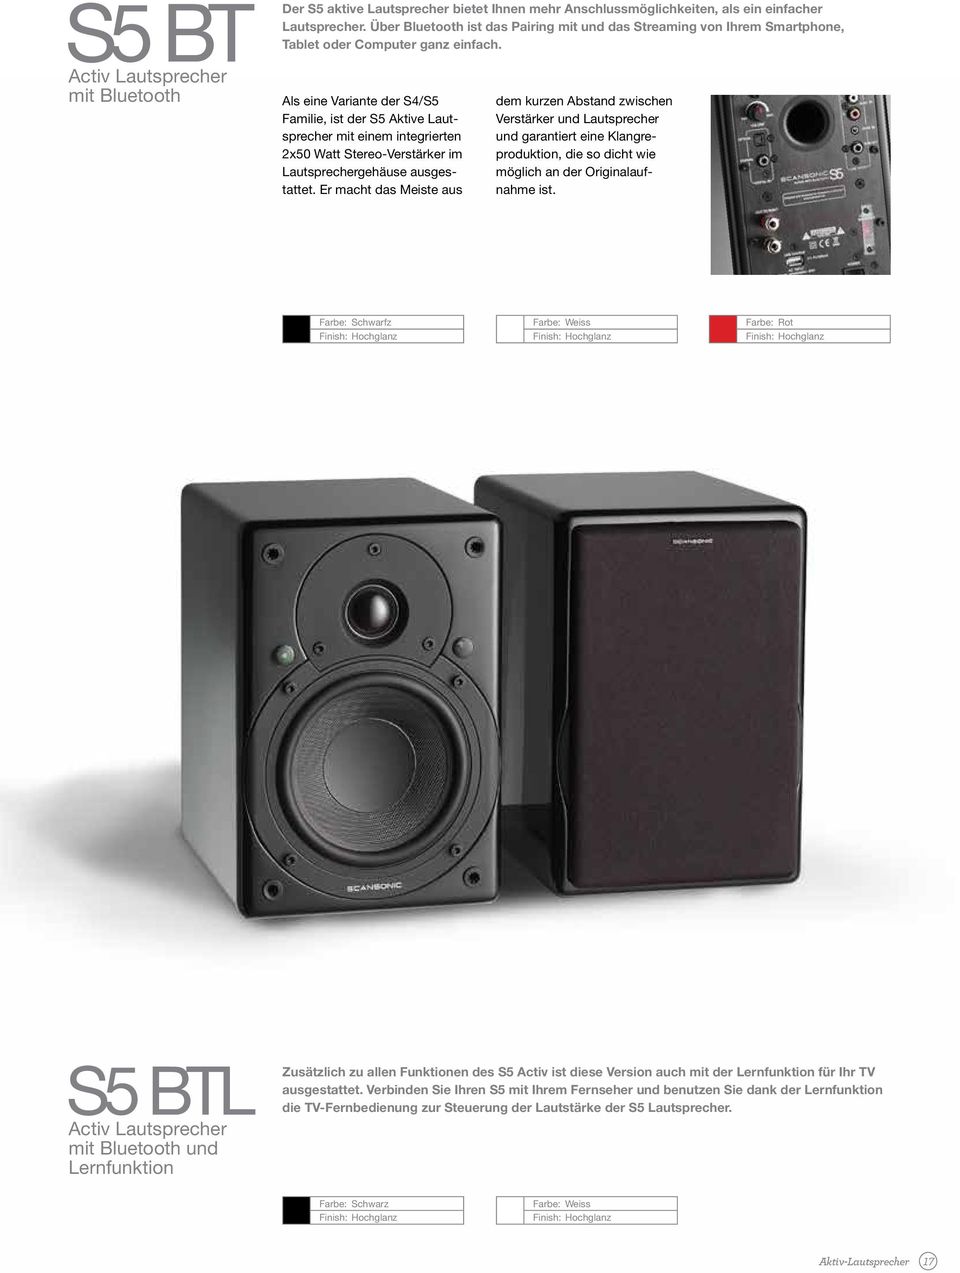 Als eine Variante der S4/S5 Familie, ist der S5 Aktive Lautsprecher mit einem integrierten 2x50 Watt Stereo-Verstärker im Lautsprechergehäuse ausgestattet.